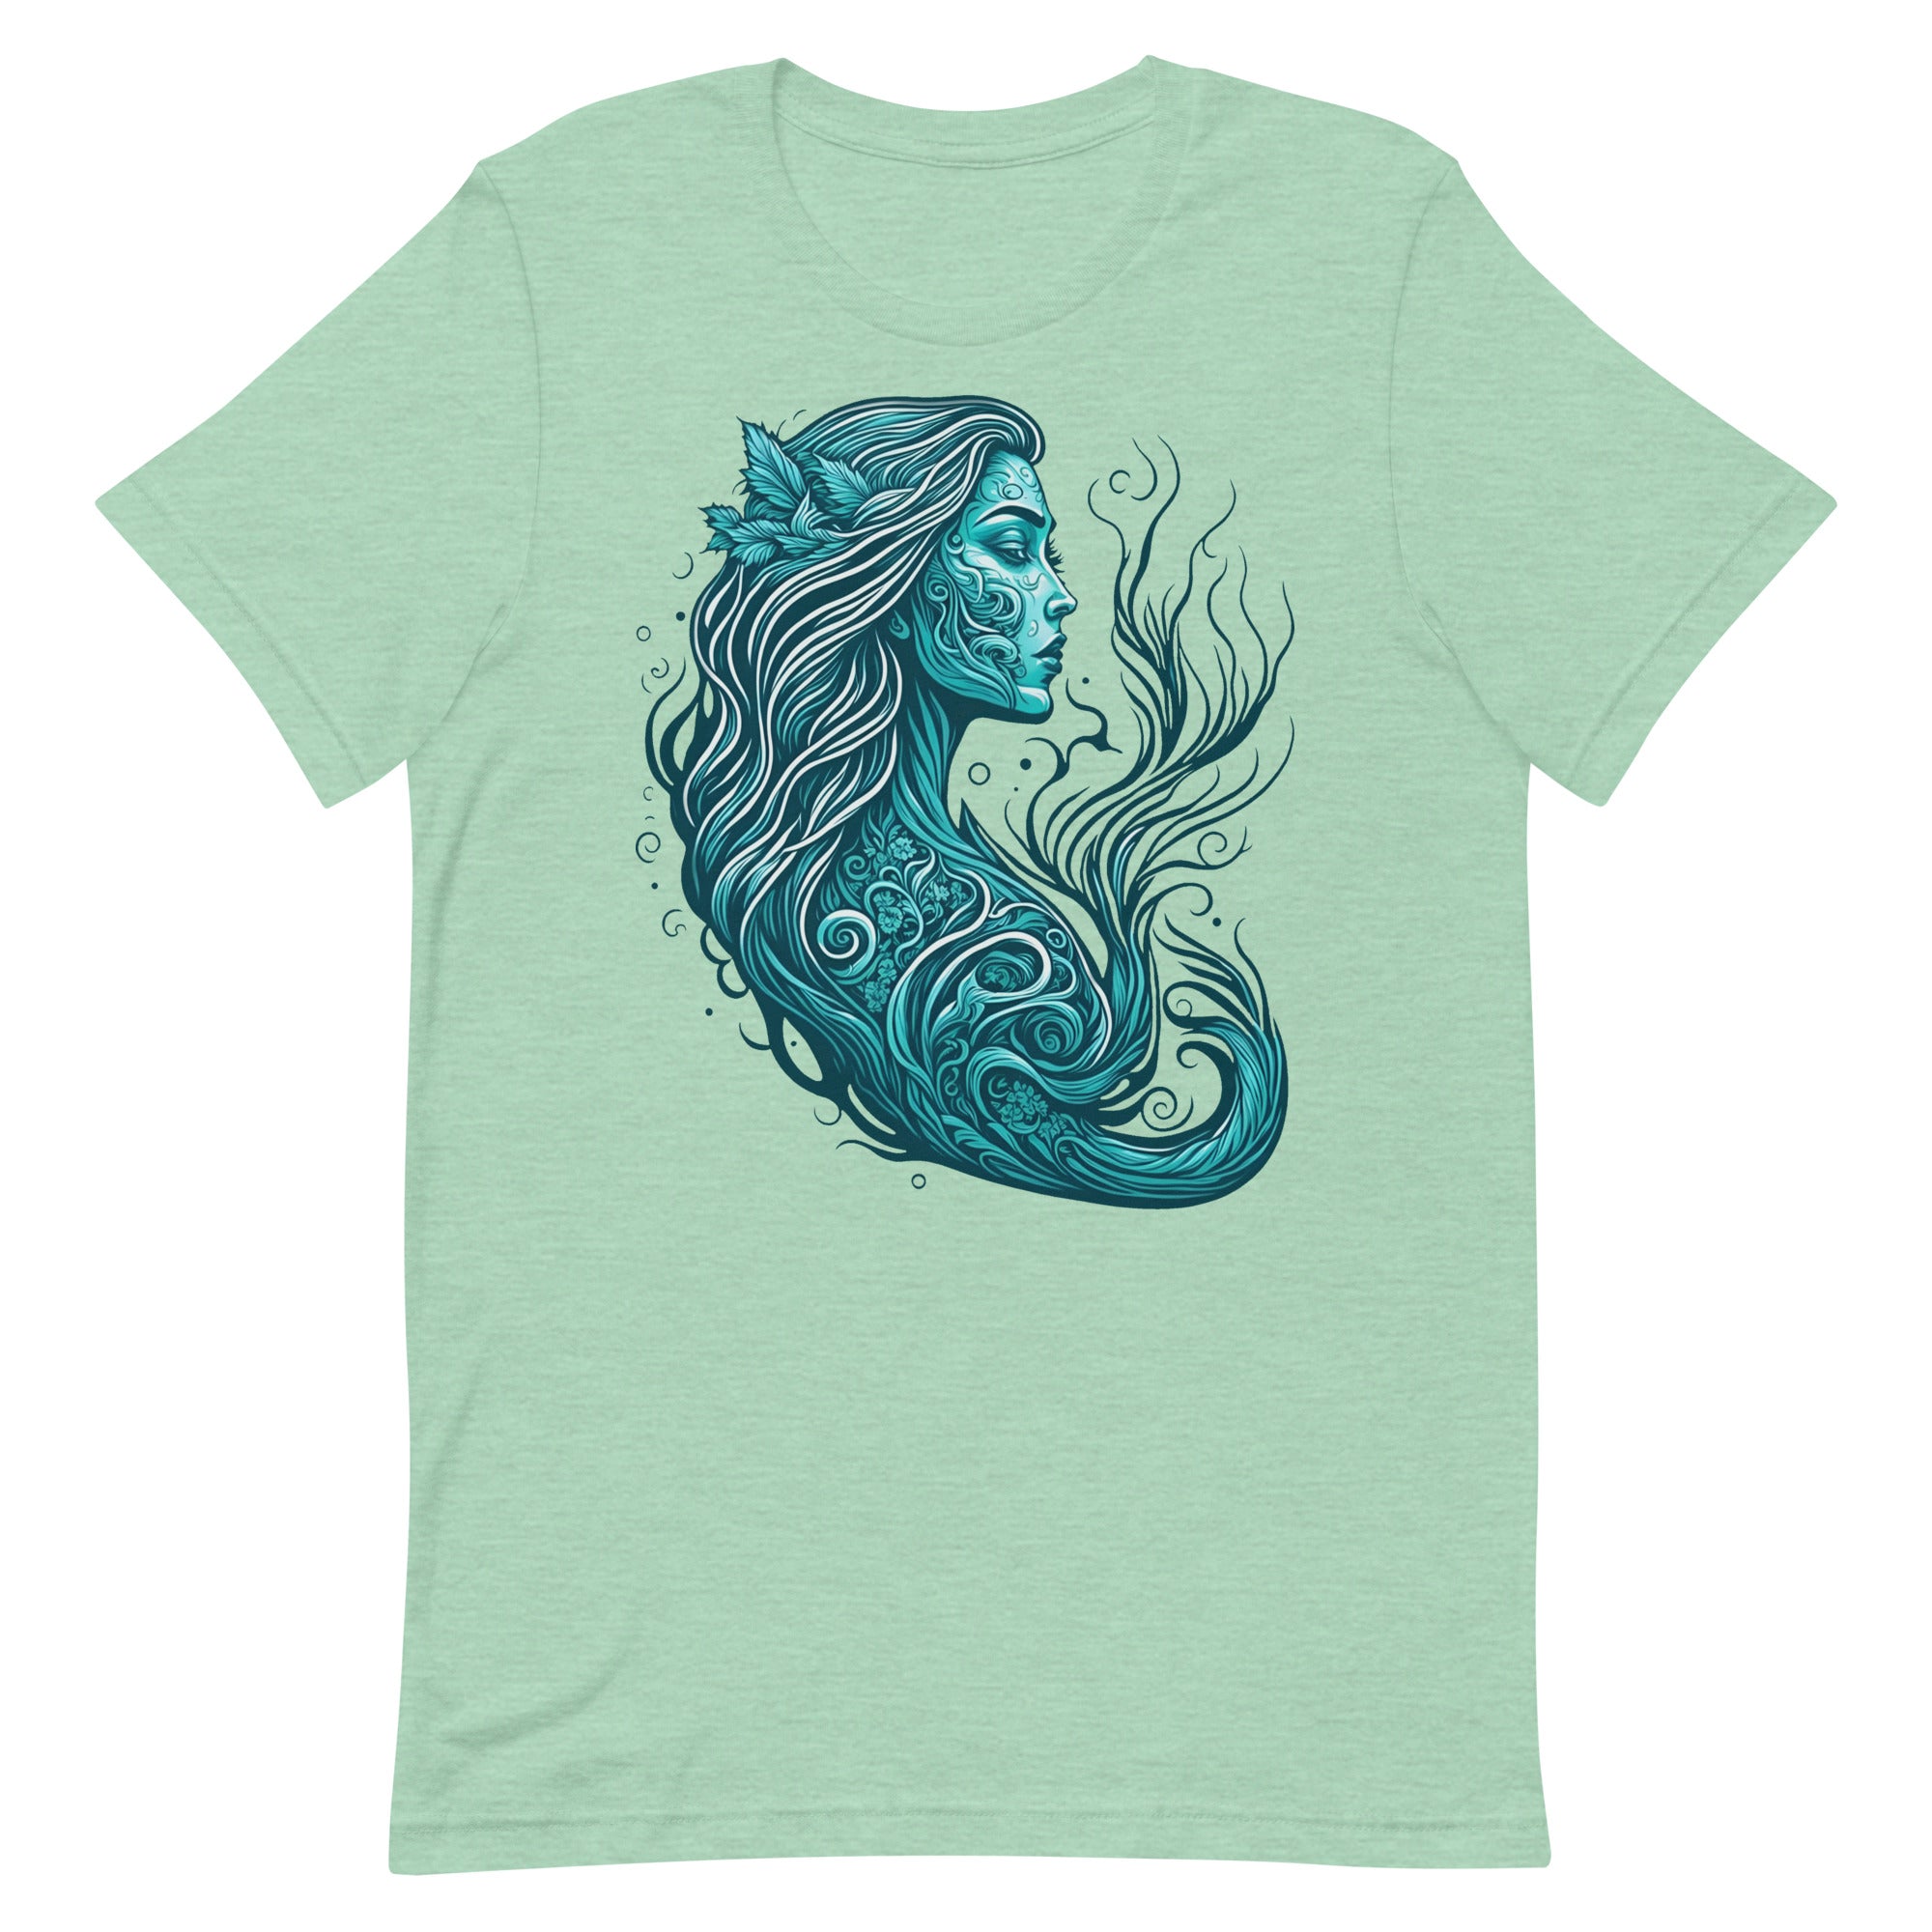 Mermaid profile blue